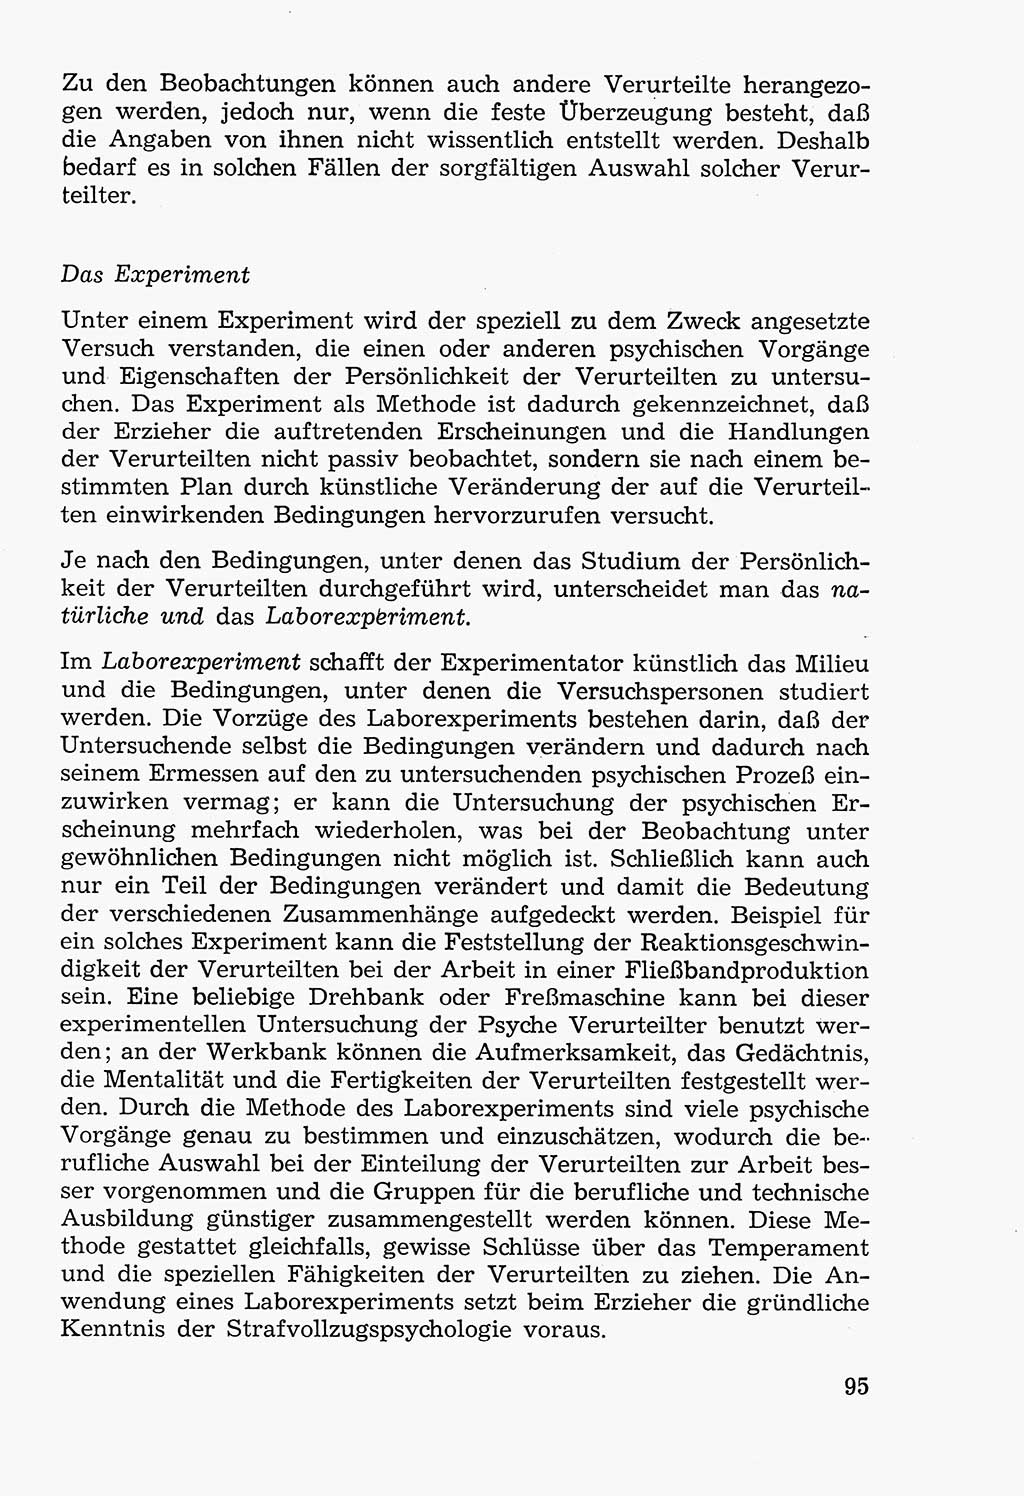 Lehrbuch der Strafvollzugspädagogik [Deutsche Demokratische Republik (DDR)] 1969, Seite 95 (Lb. SV-Pd. DDR 1969, S. 95)